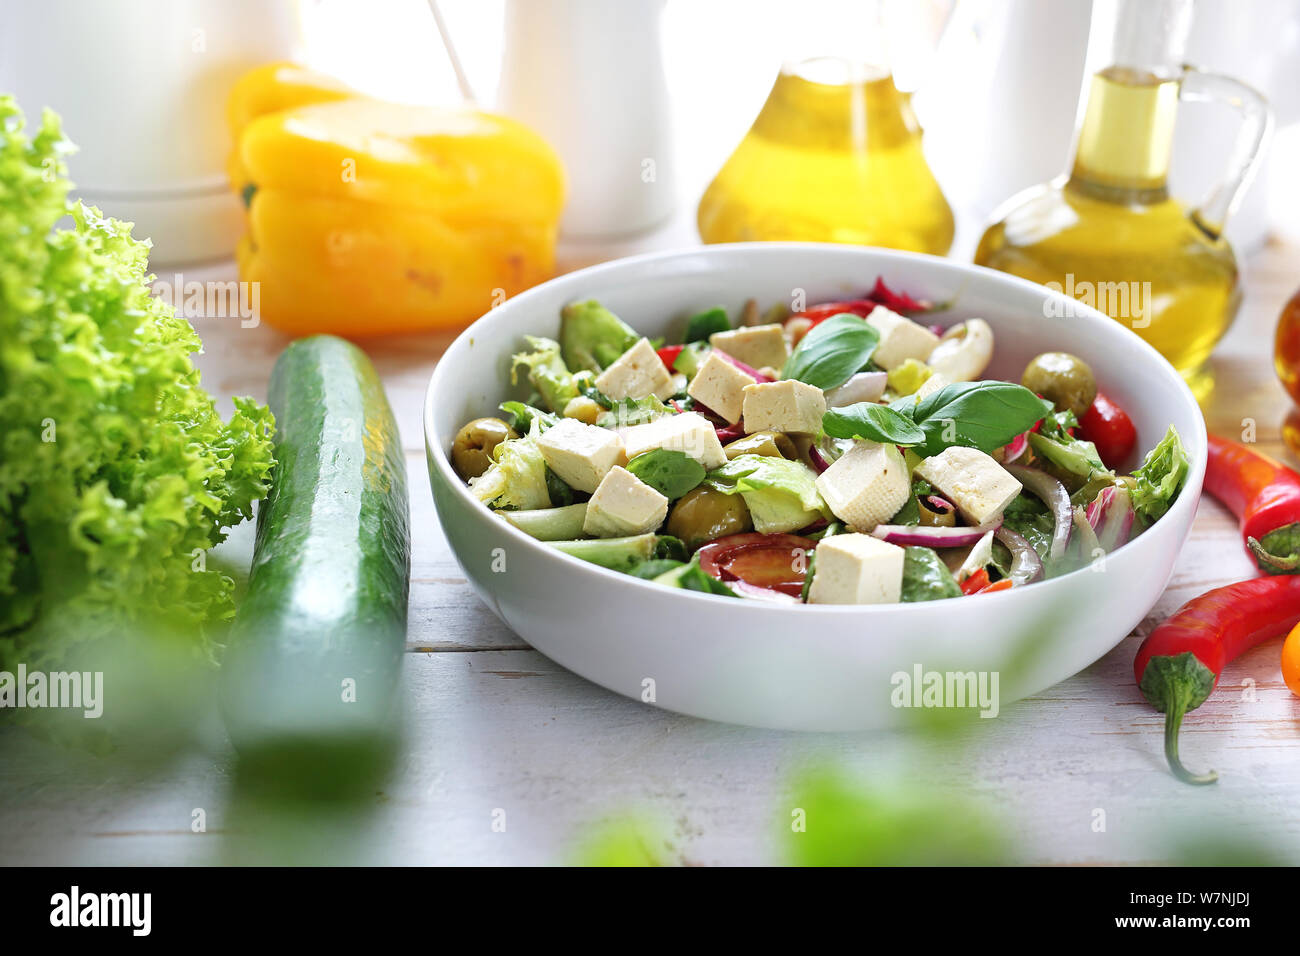 Cibo e gustosa insalata servita su una piastra. Dieta sana. Piatto vegetariano. Foto Stock